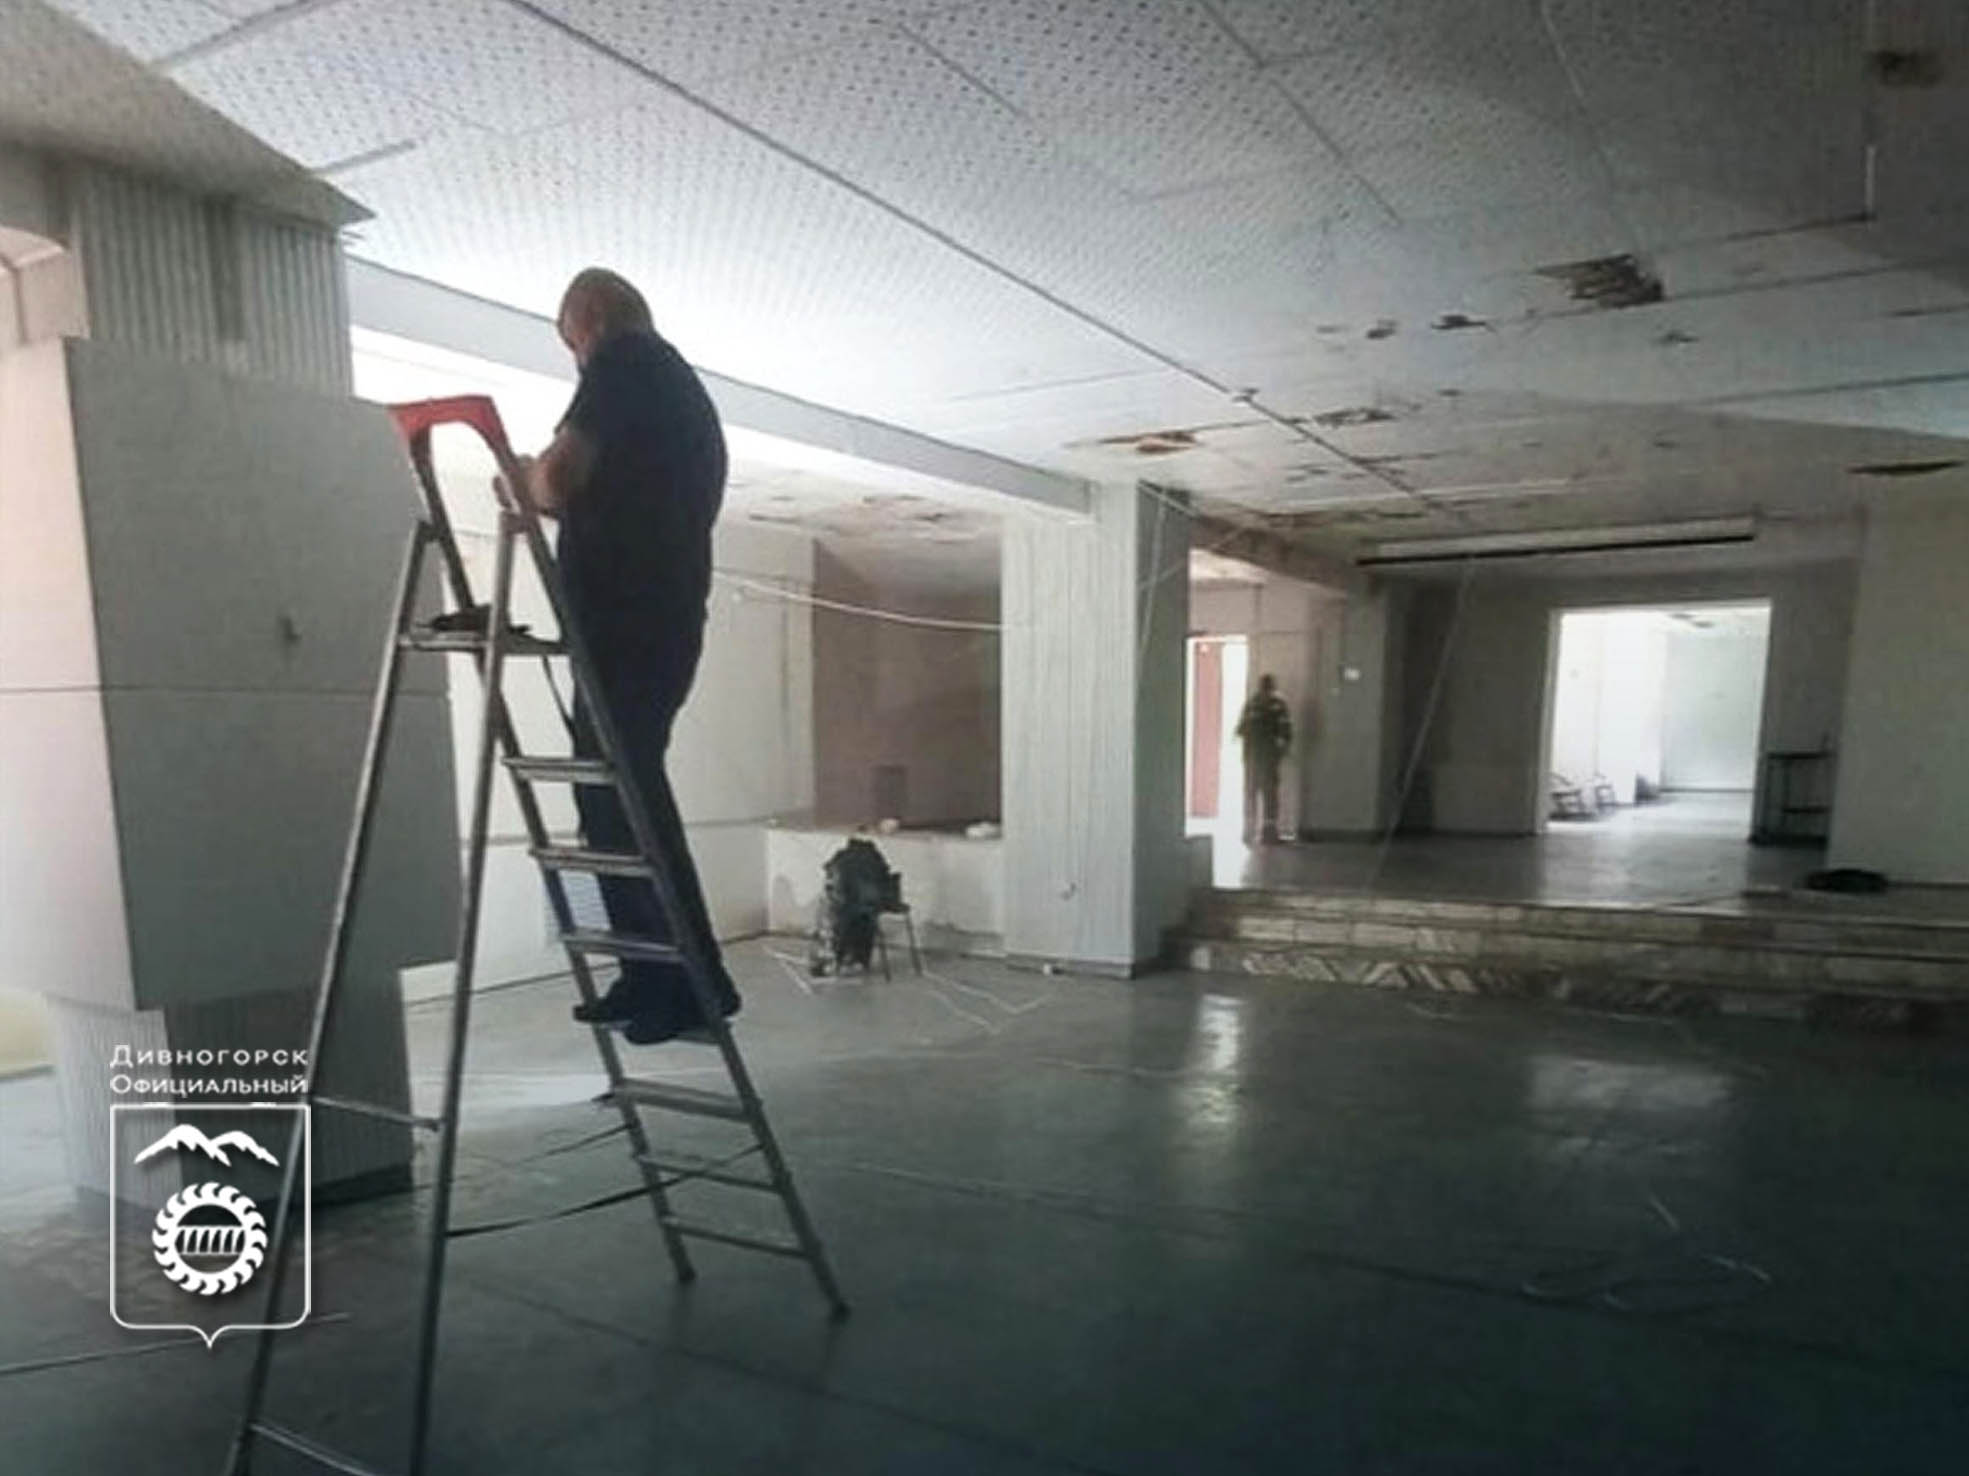 Начали капитальный ремонт потолка выставочного зала художественного музея.